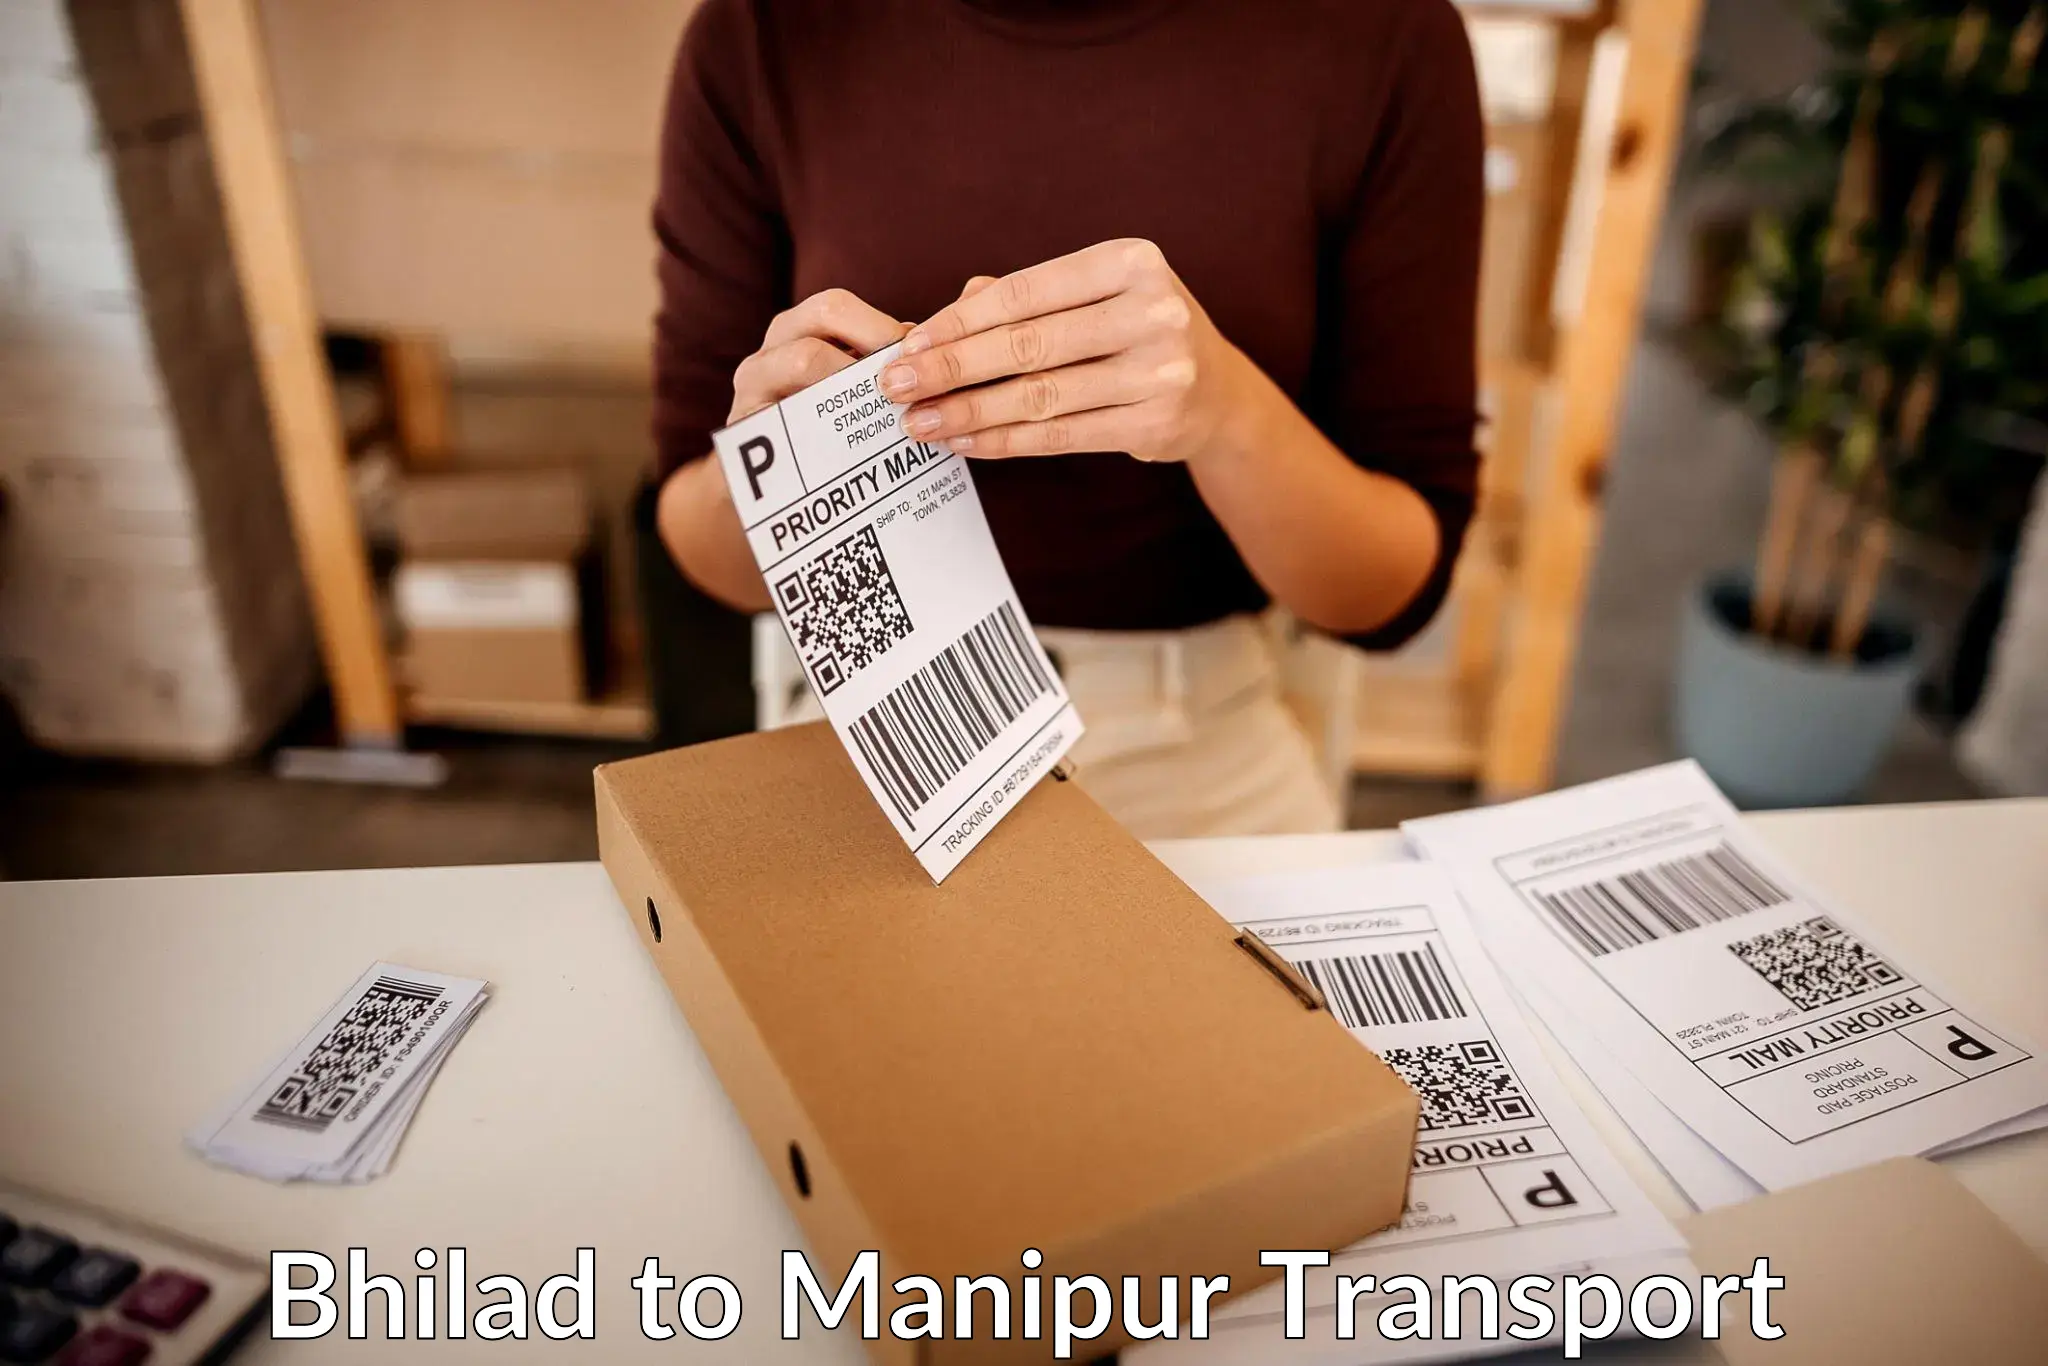 Furniture transport service Bhilad to Kangpokpi